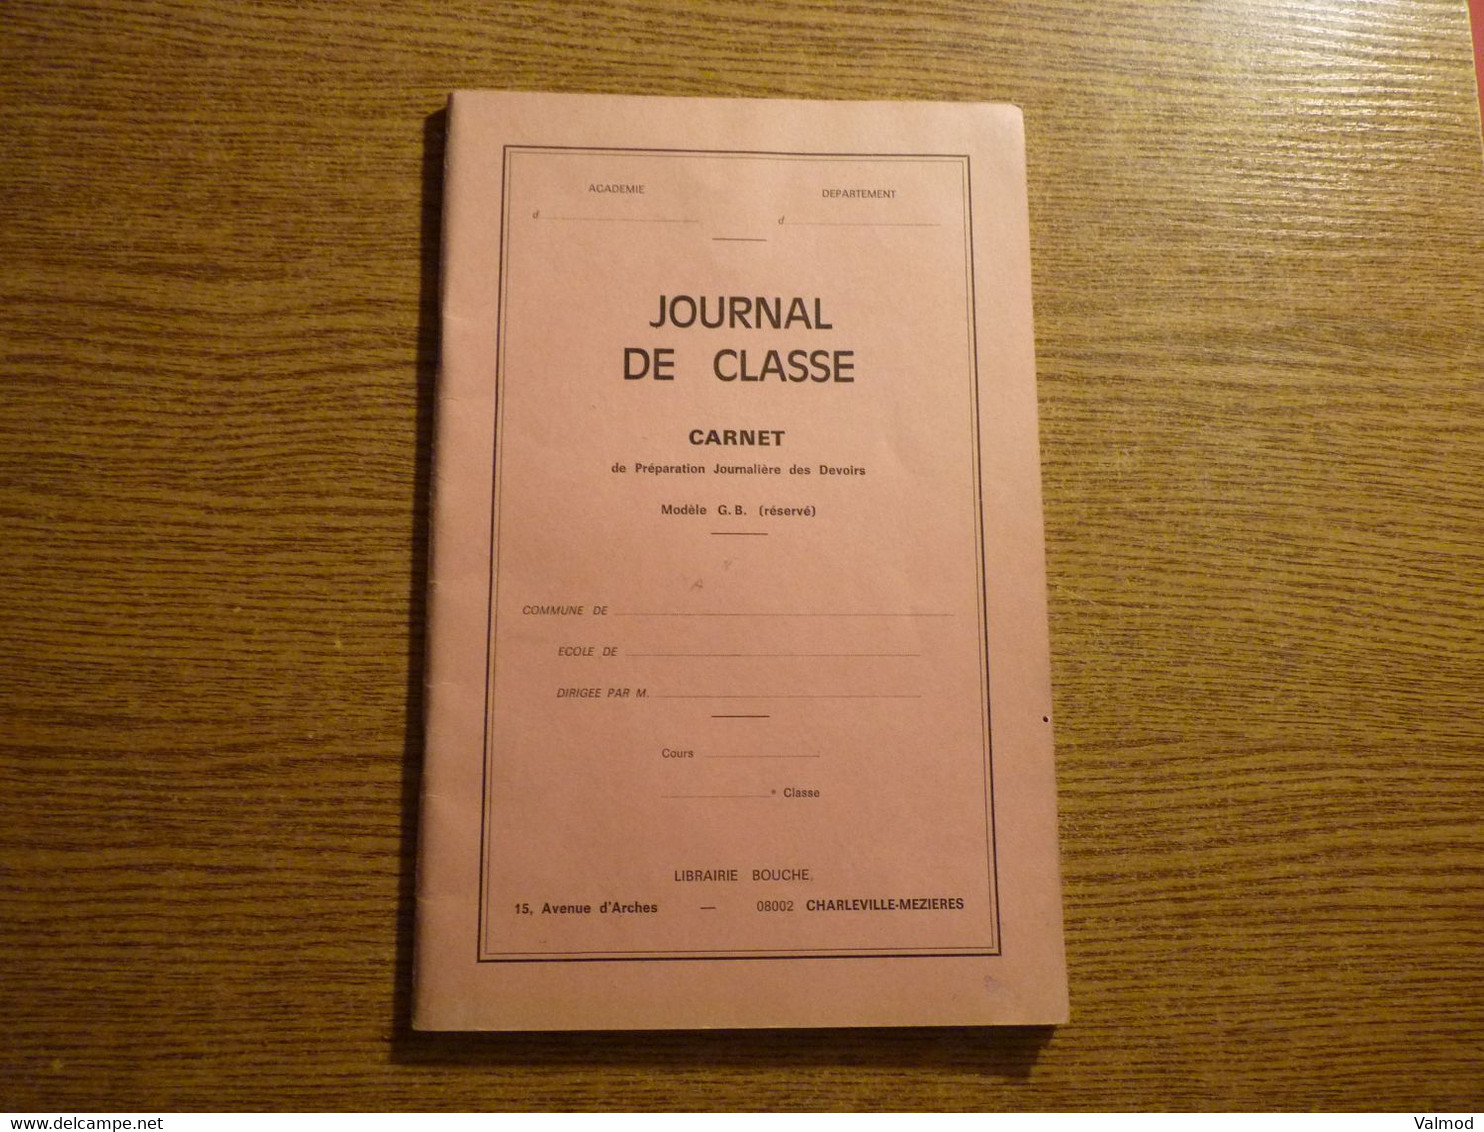 Scolaire - Journal De Classe - Carnet De Préparation Journalière Des Devoirs - Librairie Bouche - Charleville-Mézières. - Material Und Zubehör